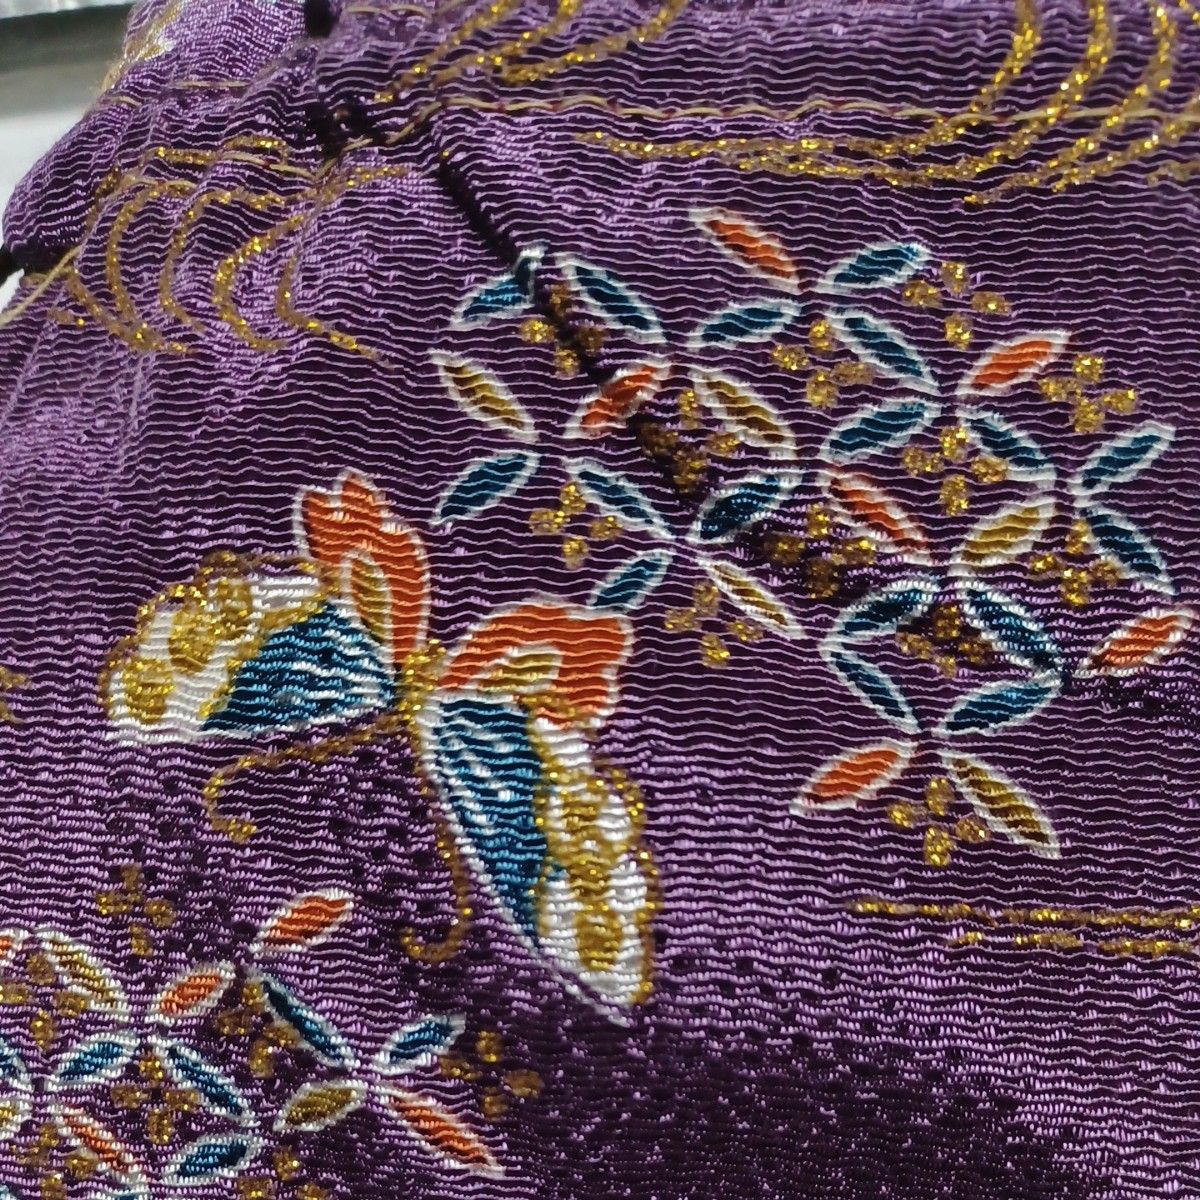 パッチワークと裏地はキルティングの化粧ポーチ  & 金糸の入った蝶々柄の巾着セットです。お正月用に ハンドメイド